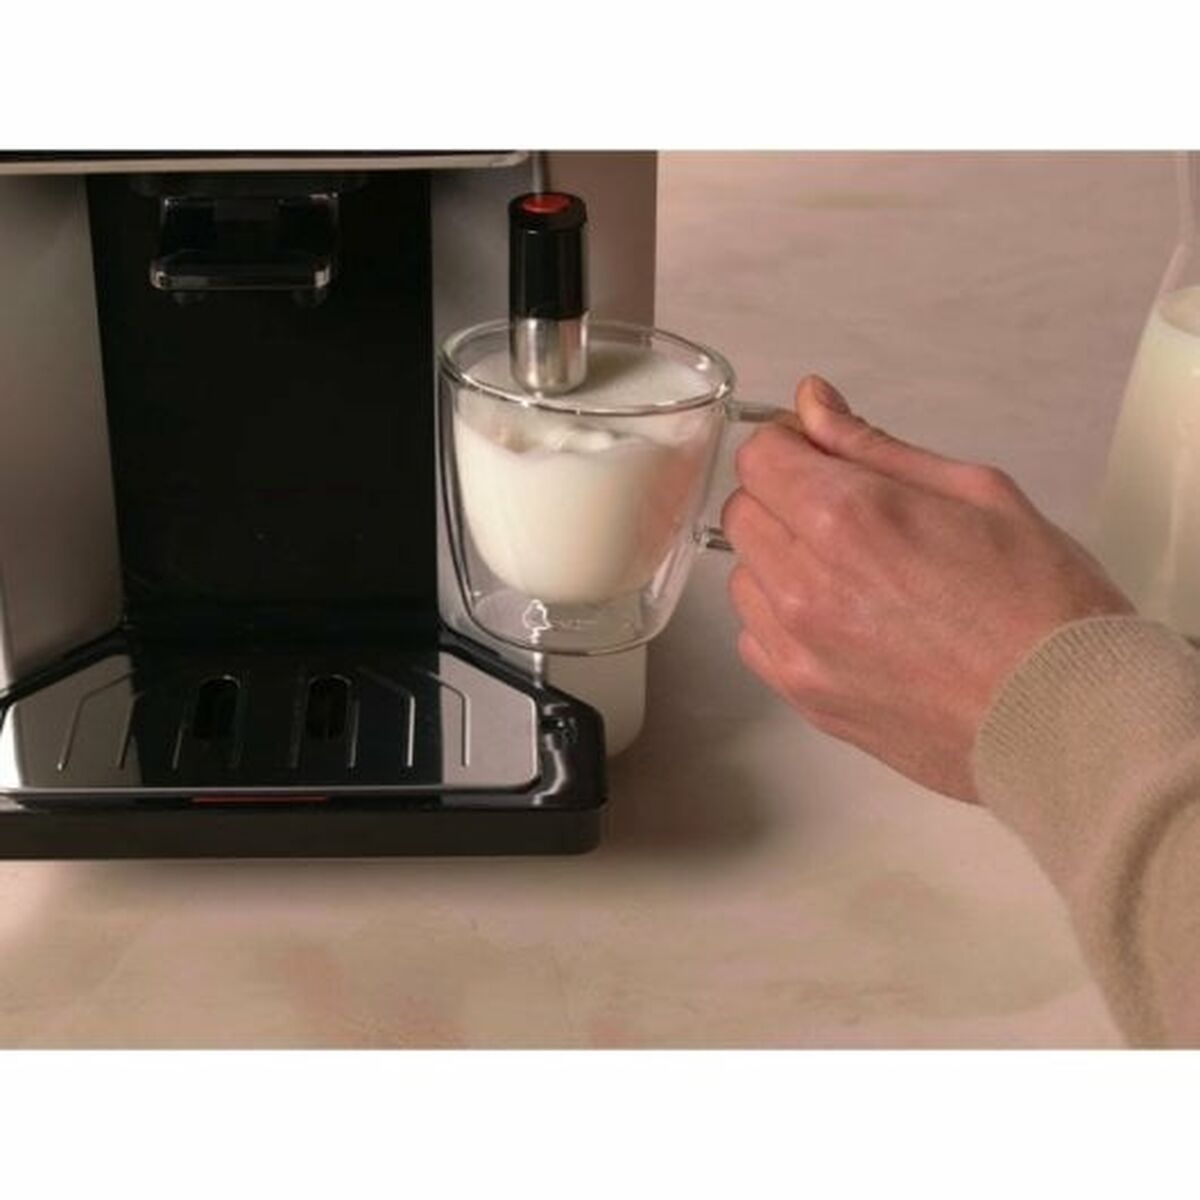 Суперавтоматическая кофеварка Krups C10 EA910A10 Чёрный 1450 W 15 bar 1,7 L